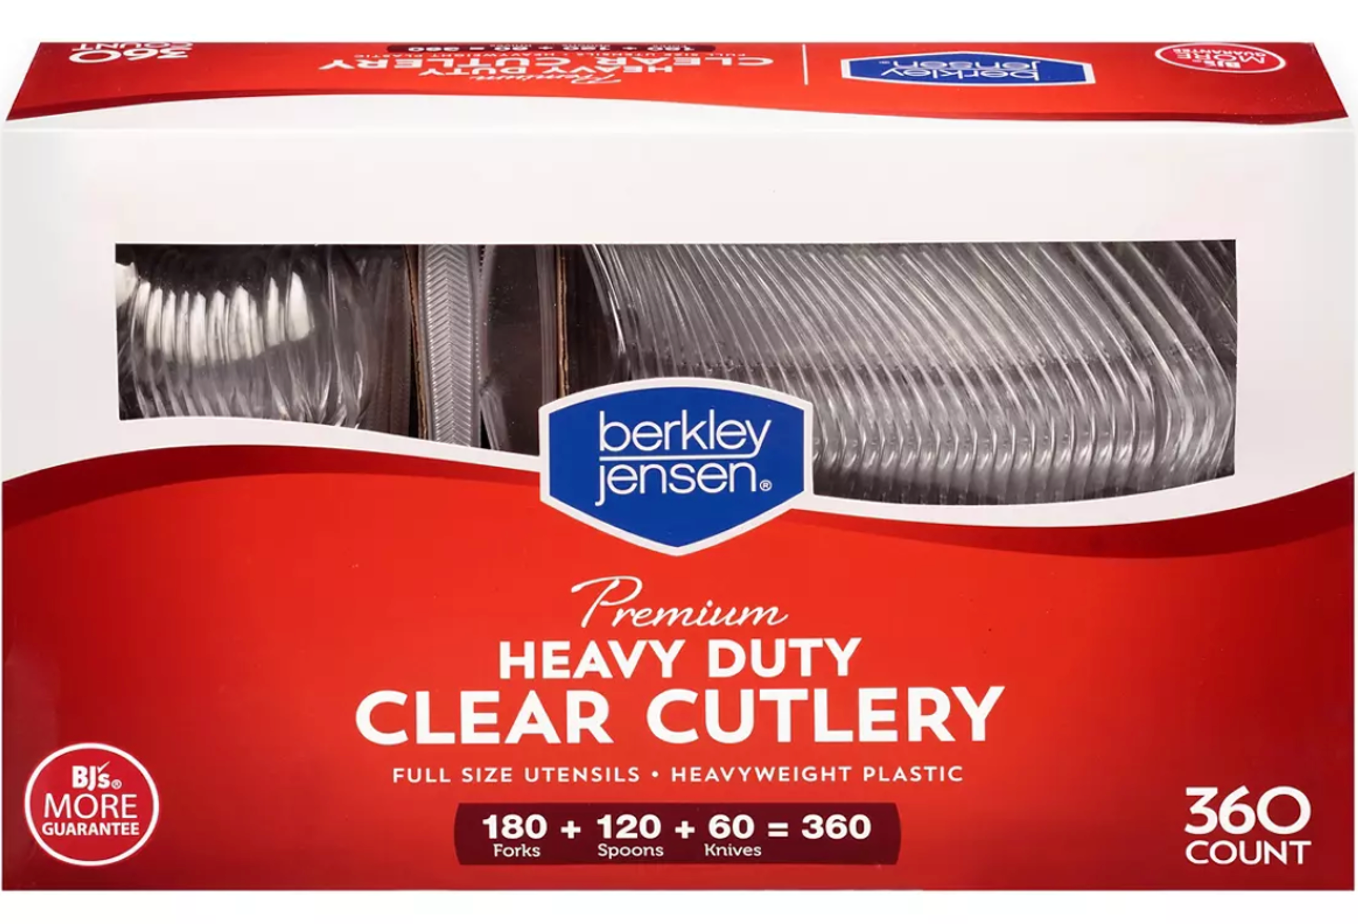 Berkley Jensen Heavy Duty Clear Cutlery , 360 pcs